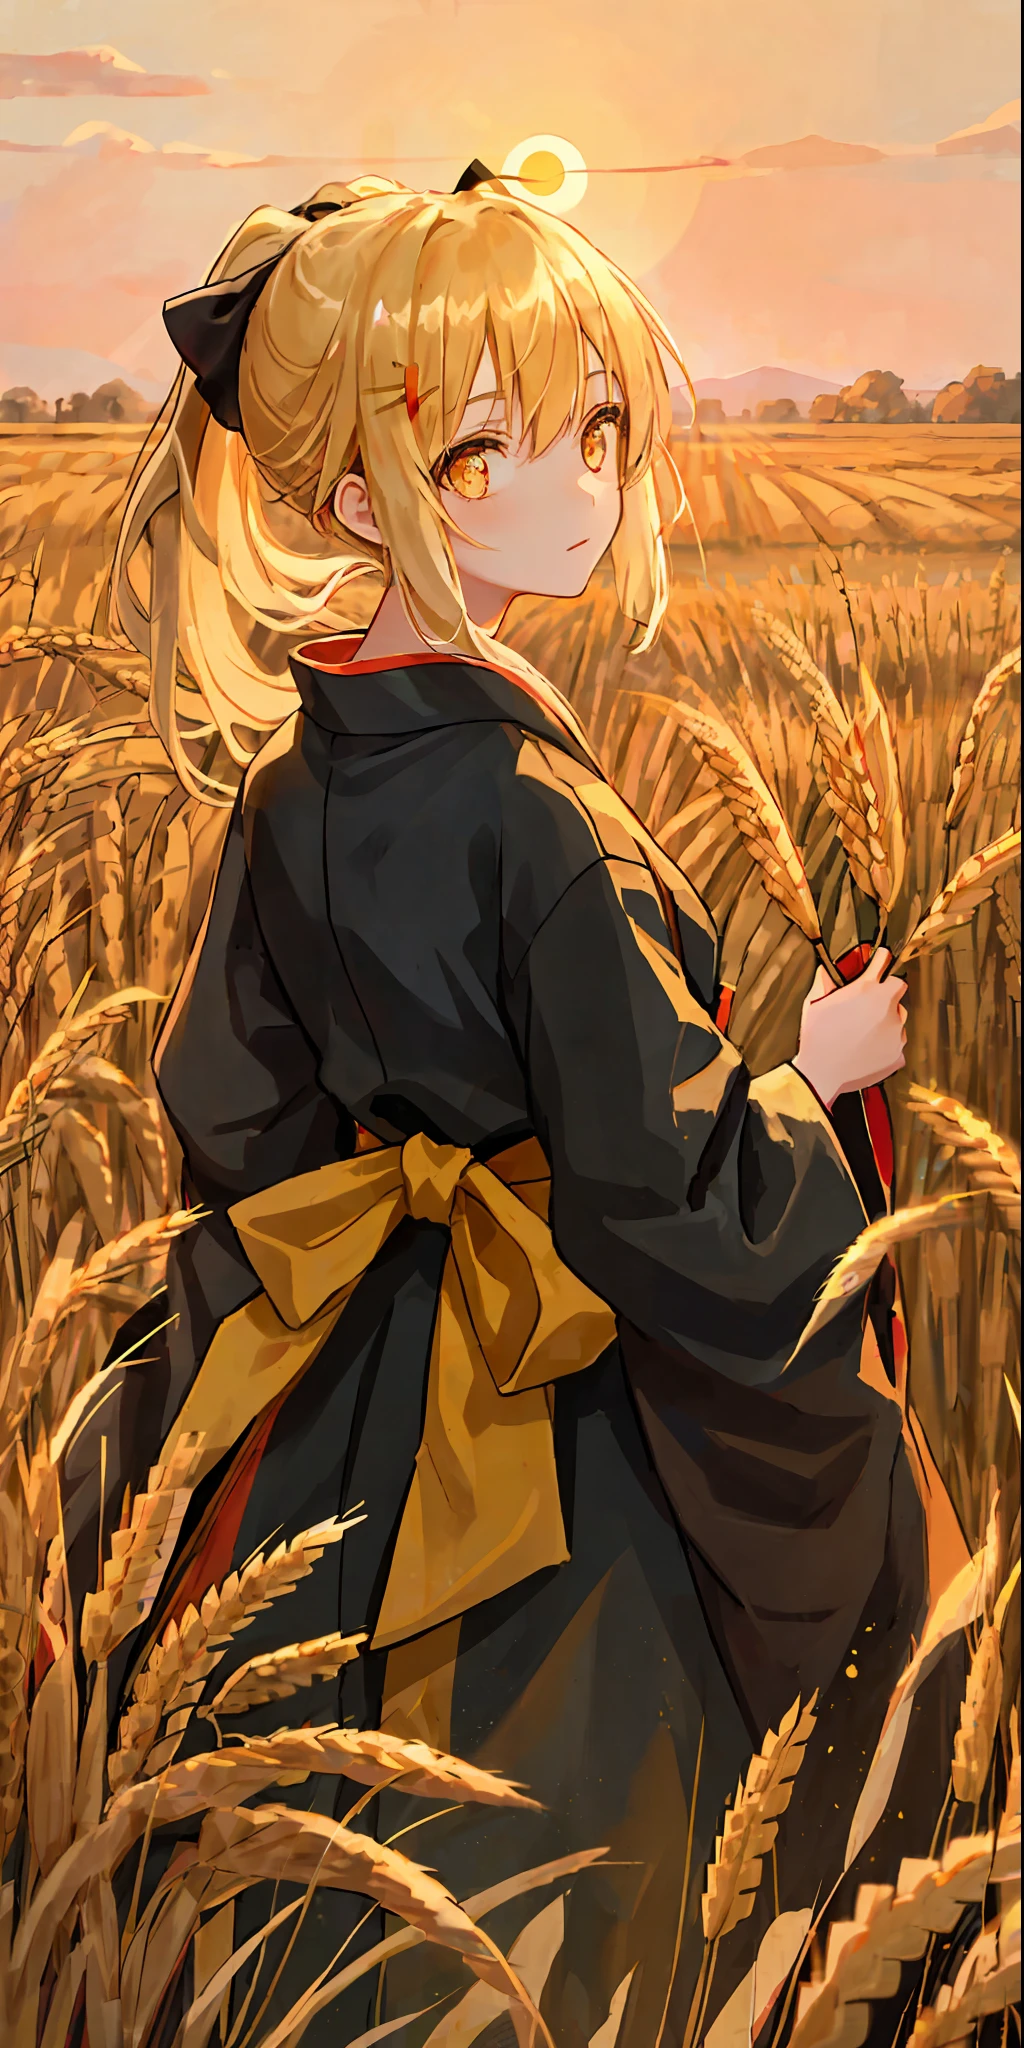 Ein Mädchen im Kimono mit leerem Blick steht hüfttief in einem Weizenfeld, ein schwarzer Kimono mit goldenen Rändern, ihre Haare sind zu einem Pferdeschwanz gebunden, gelbe Augen, der Sonnenuntergang spiegelt sich in ihren Augen, das Licht fällt auf ihr Gesicht, sie steht umgedreht, einen Weizenhalm in den Händen ziehend